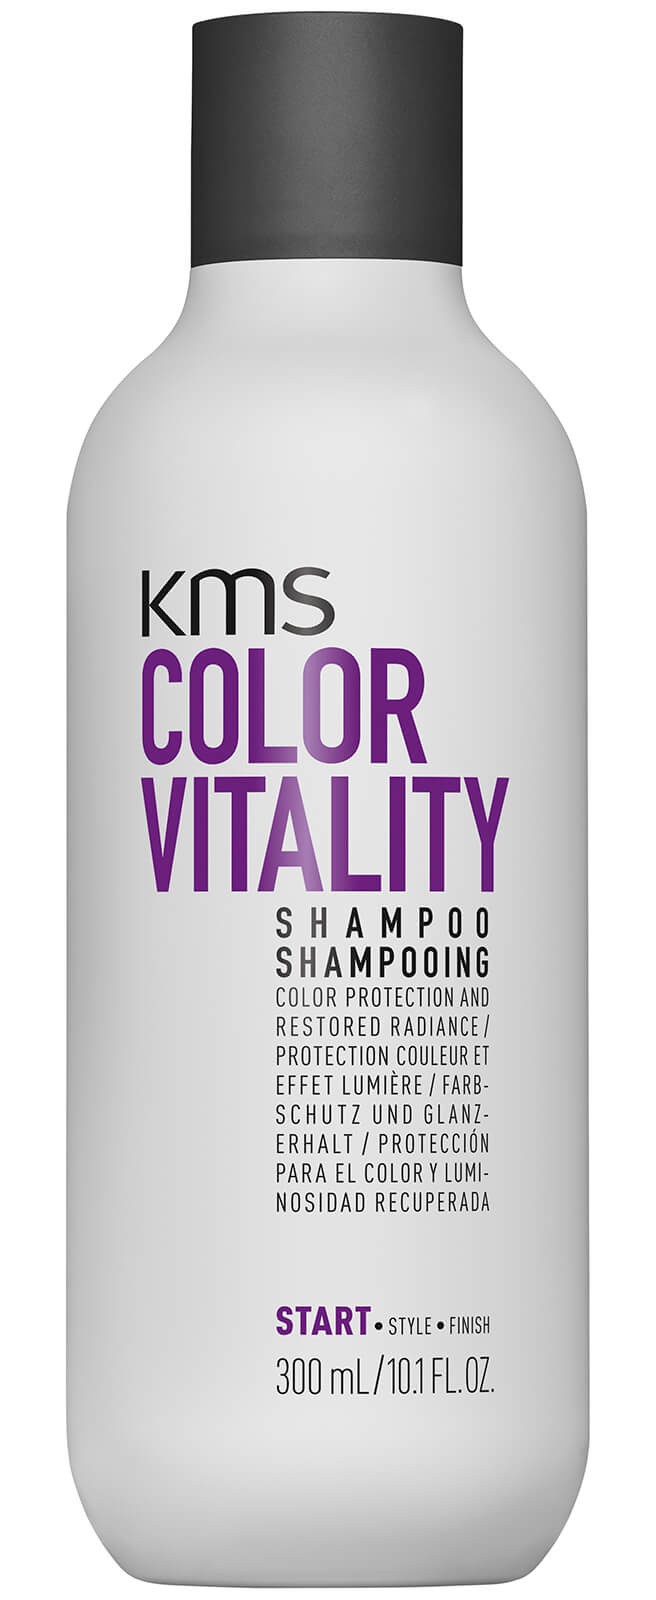 KMS Colorvitality Shampoo